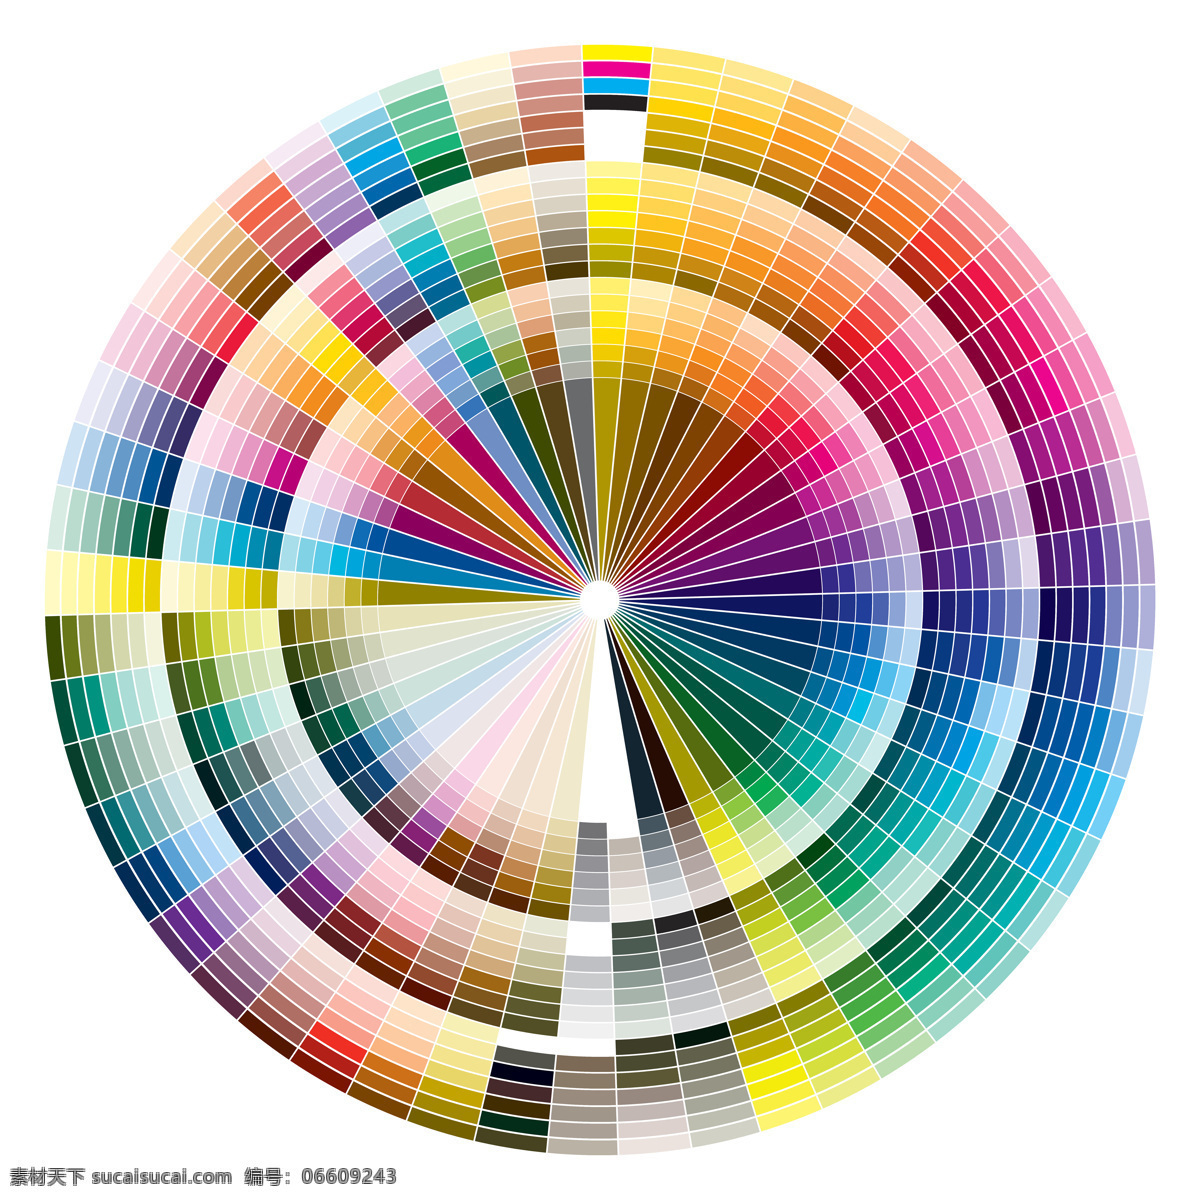 色彩 模式 颜料 圆形 颜色 色块 其他类别 生活百科